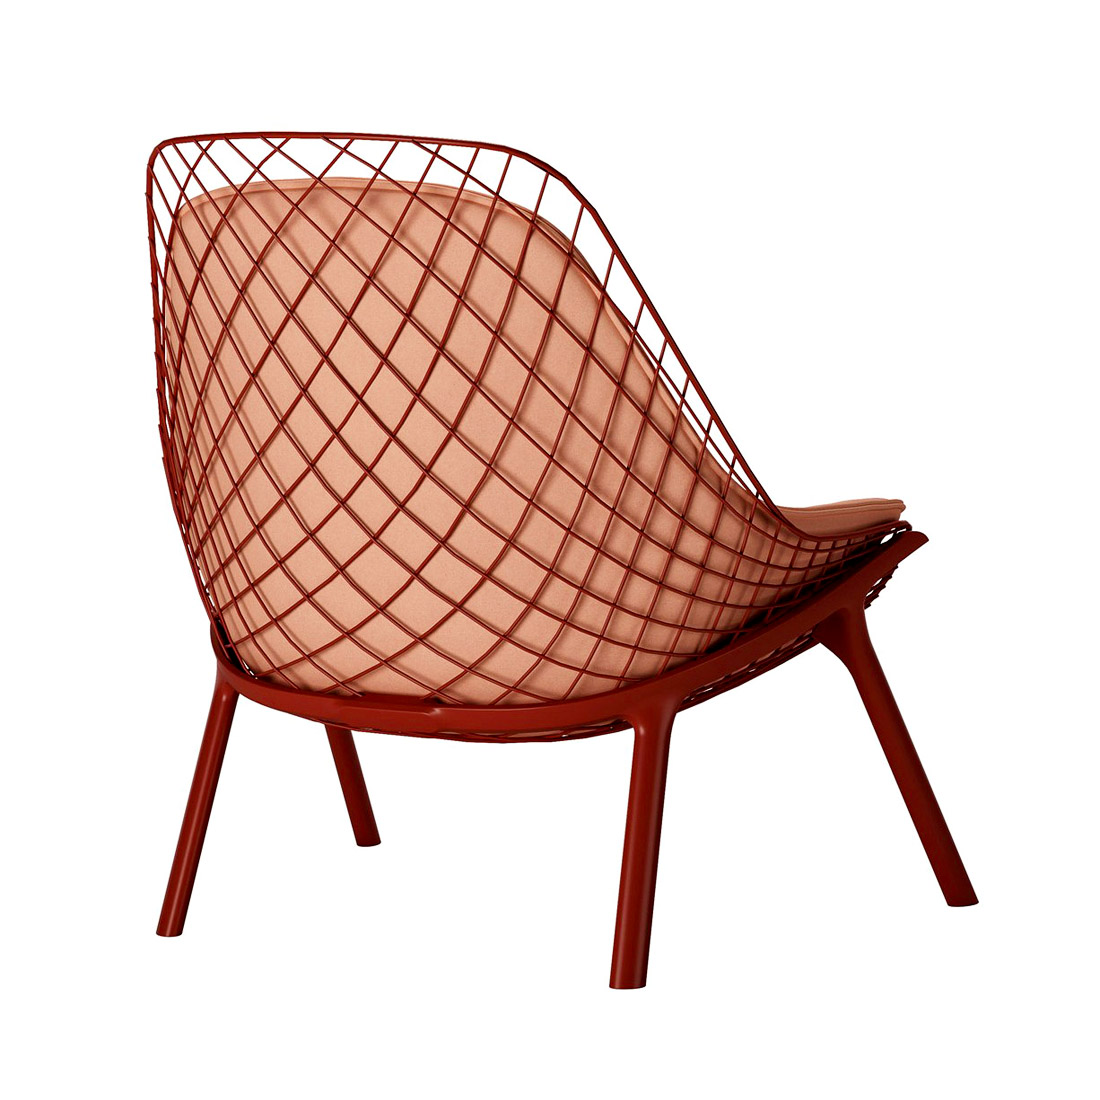 Gran kobi - дизайнерское кресло с низкой посадкой, фото